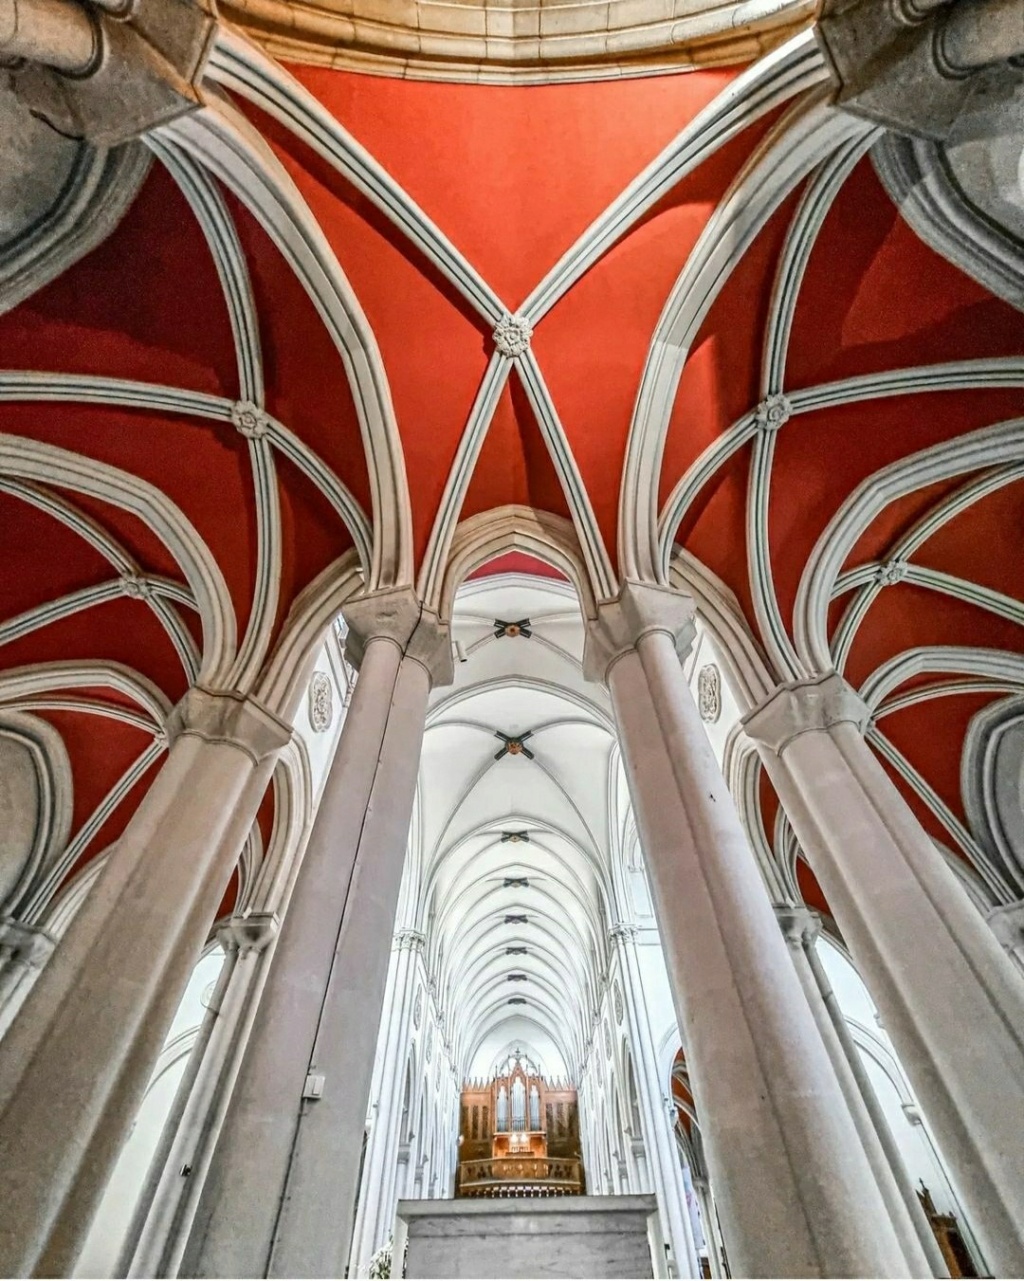 Франция - Церковь Église Notre-Dame de Bellecombe, Лион, Франция Архитектурный стиль: неоготика  Photo_69